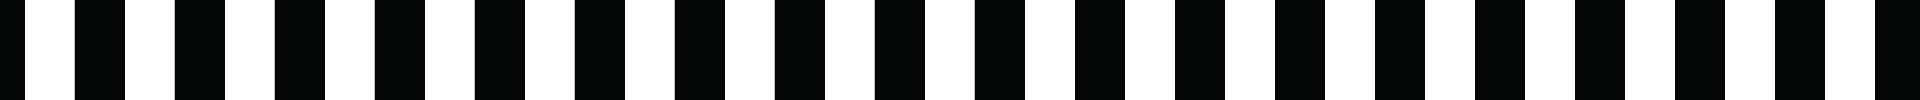 Black and white stripe graphic